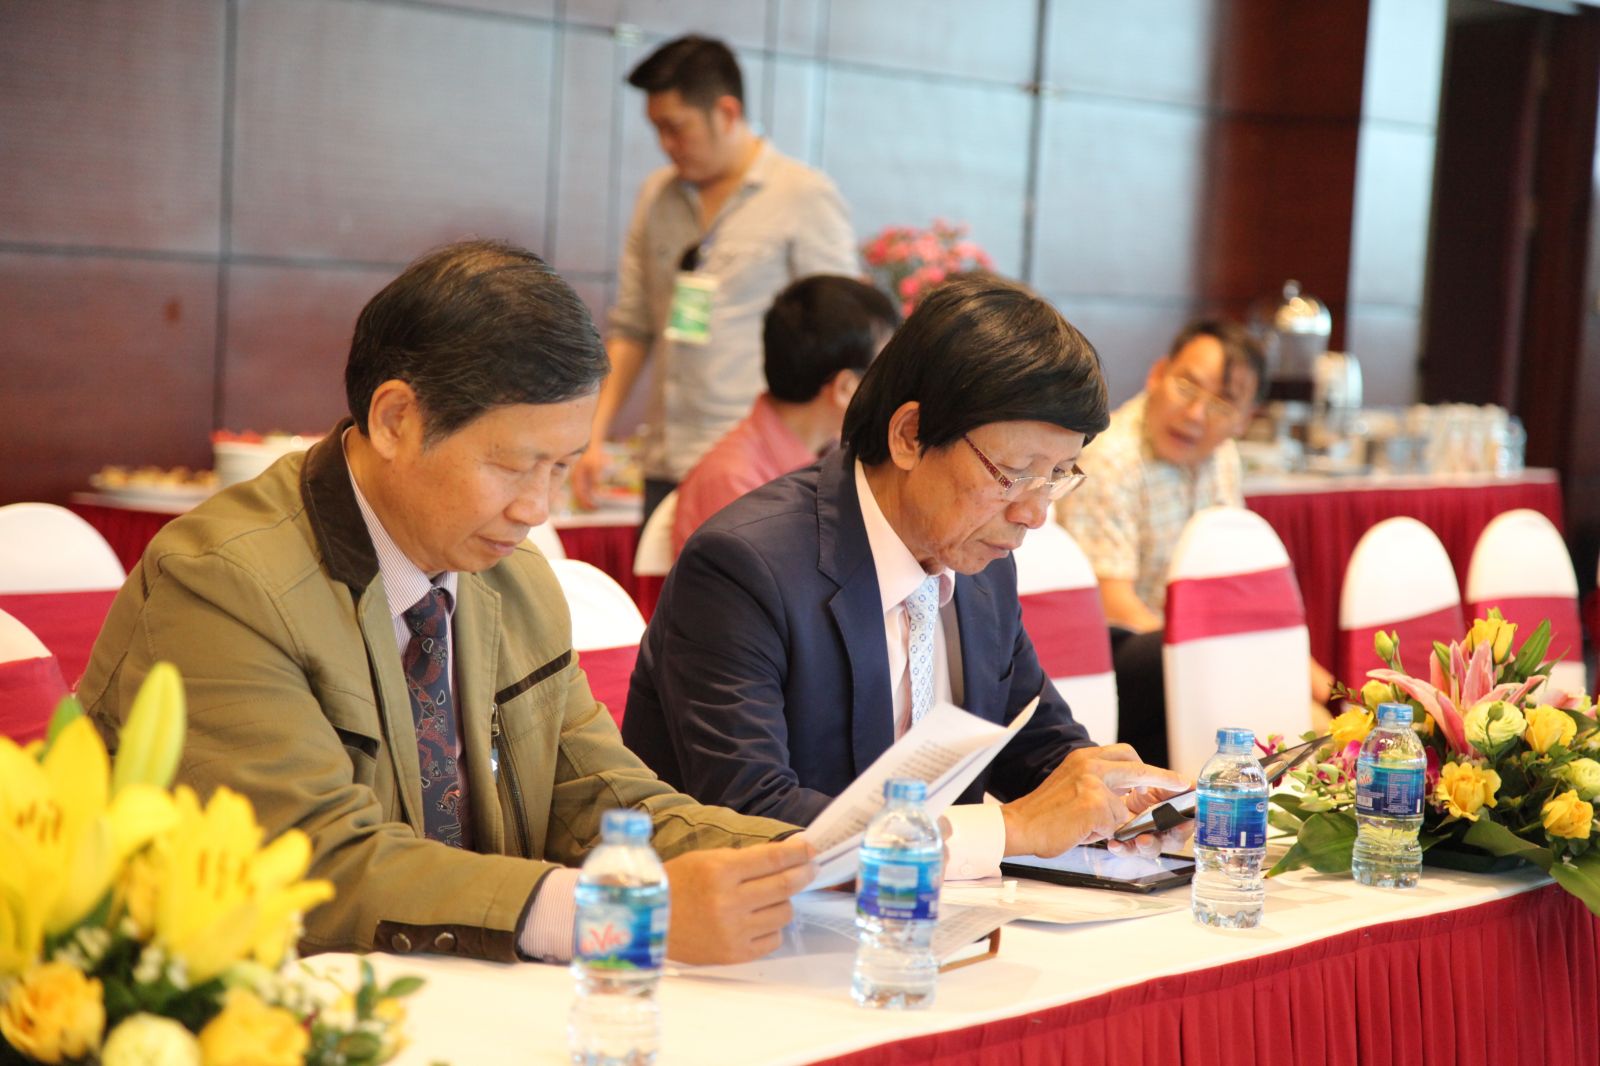 Ông Phan Hữu Thắng, Chủ tịch Hiệp hội Bất động sản Việt Nam và ông Đỗ Viết Chiến, Tổng thư ký Hiệp hội Bất động sản Việt Nam